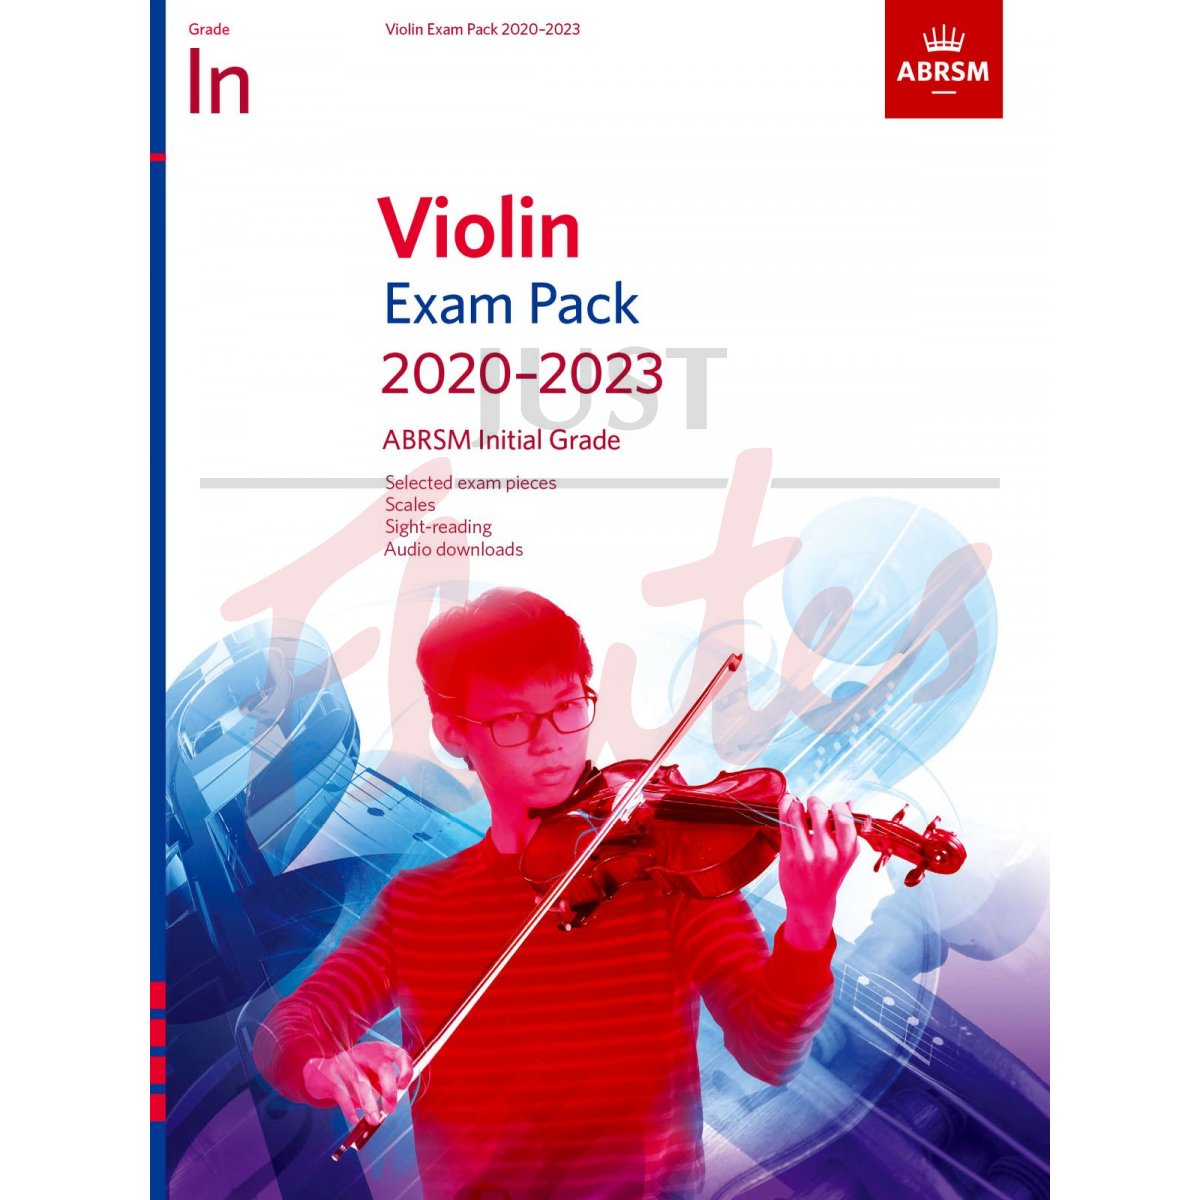 Violin Exam Pack 2020-2023, Initial